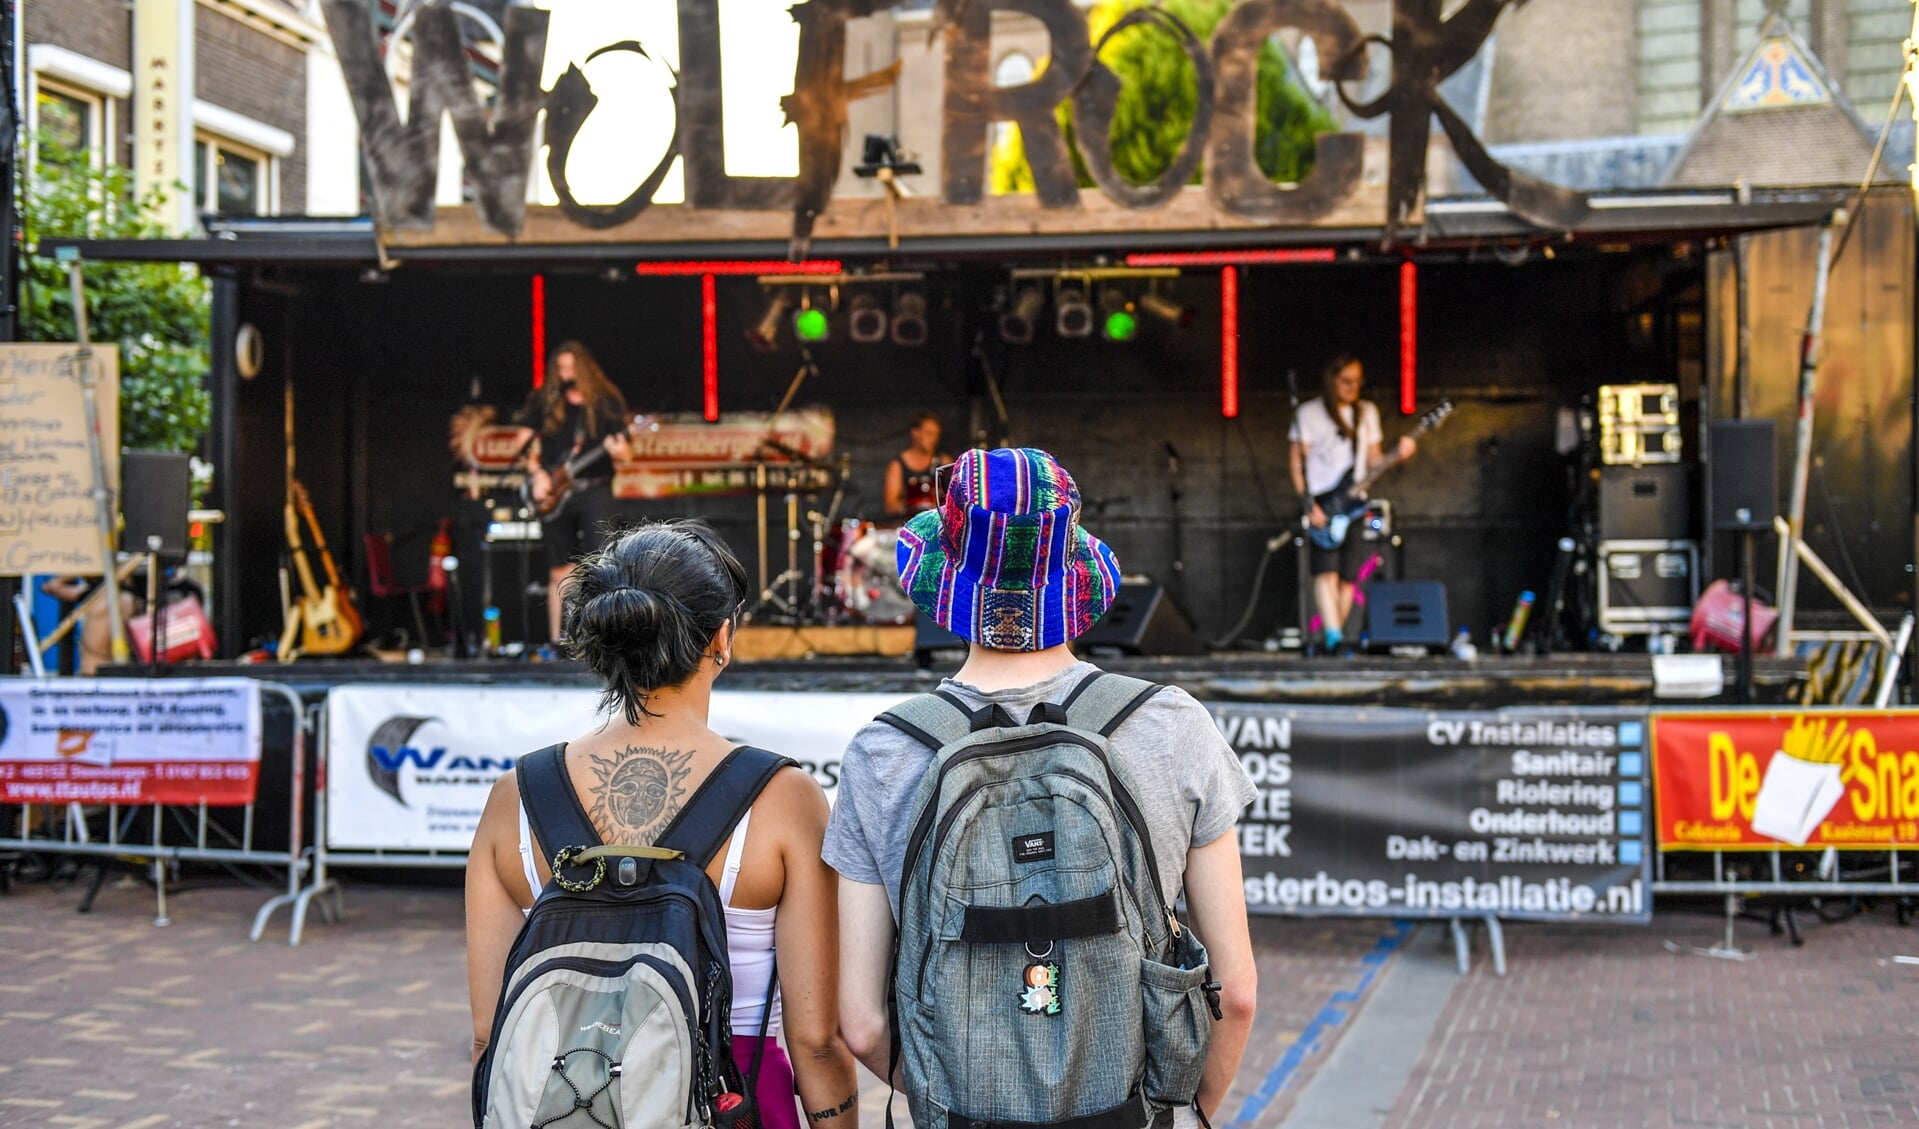 Mensen kunnen genieten van punk-, rock- en metalbands op de Markt van Steenbergen.